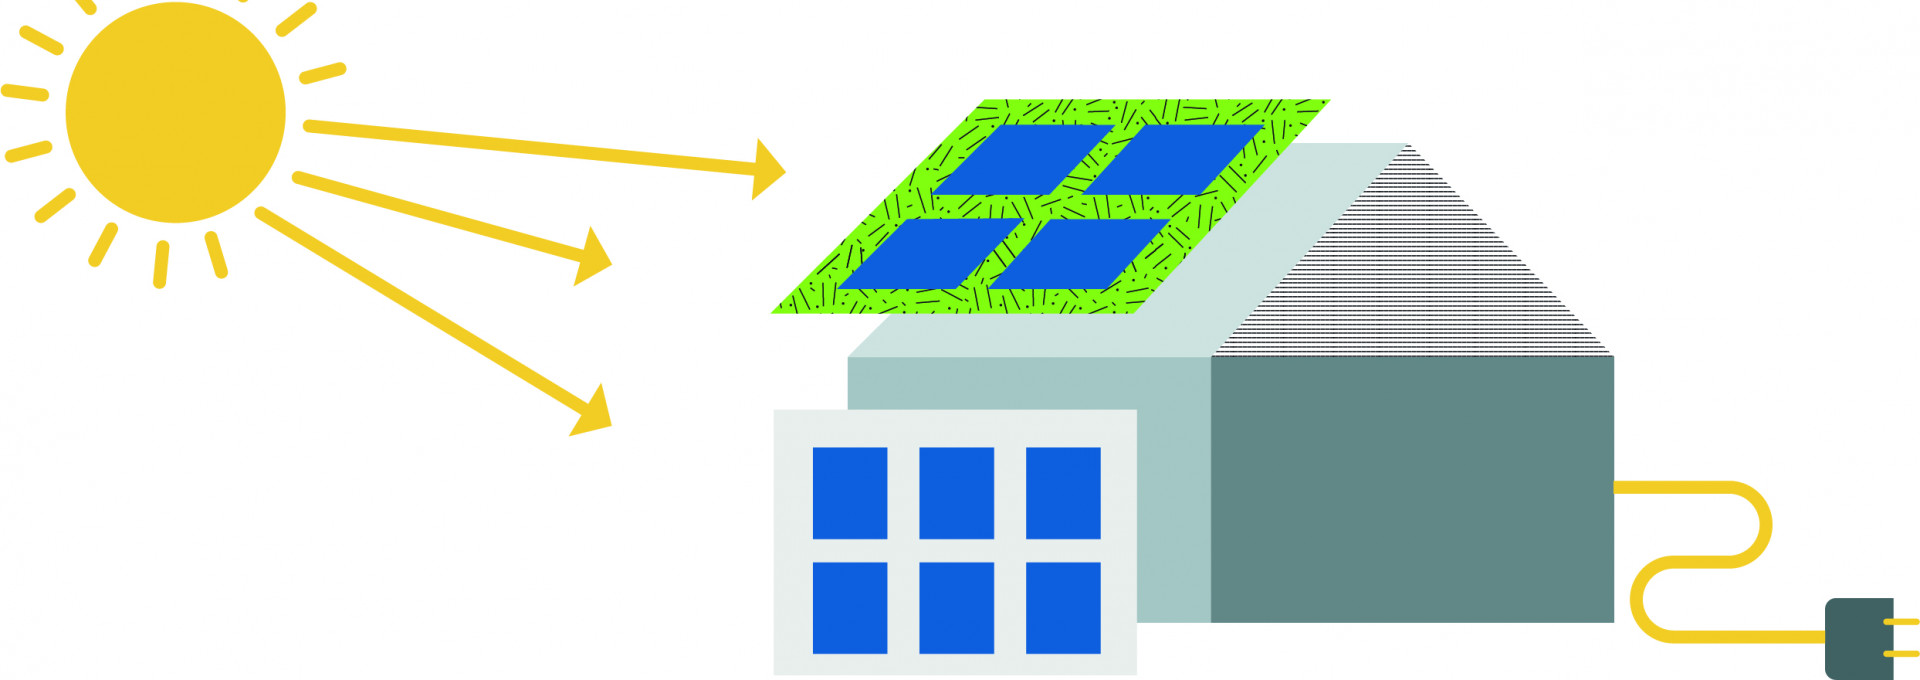 Grafische Darstellung wie Sonne auf Solarzellenan einem Haus treffen.